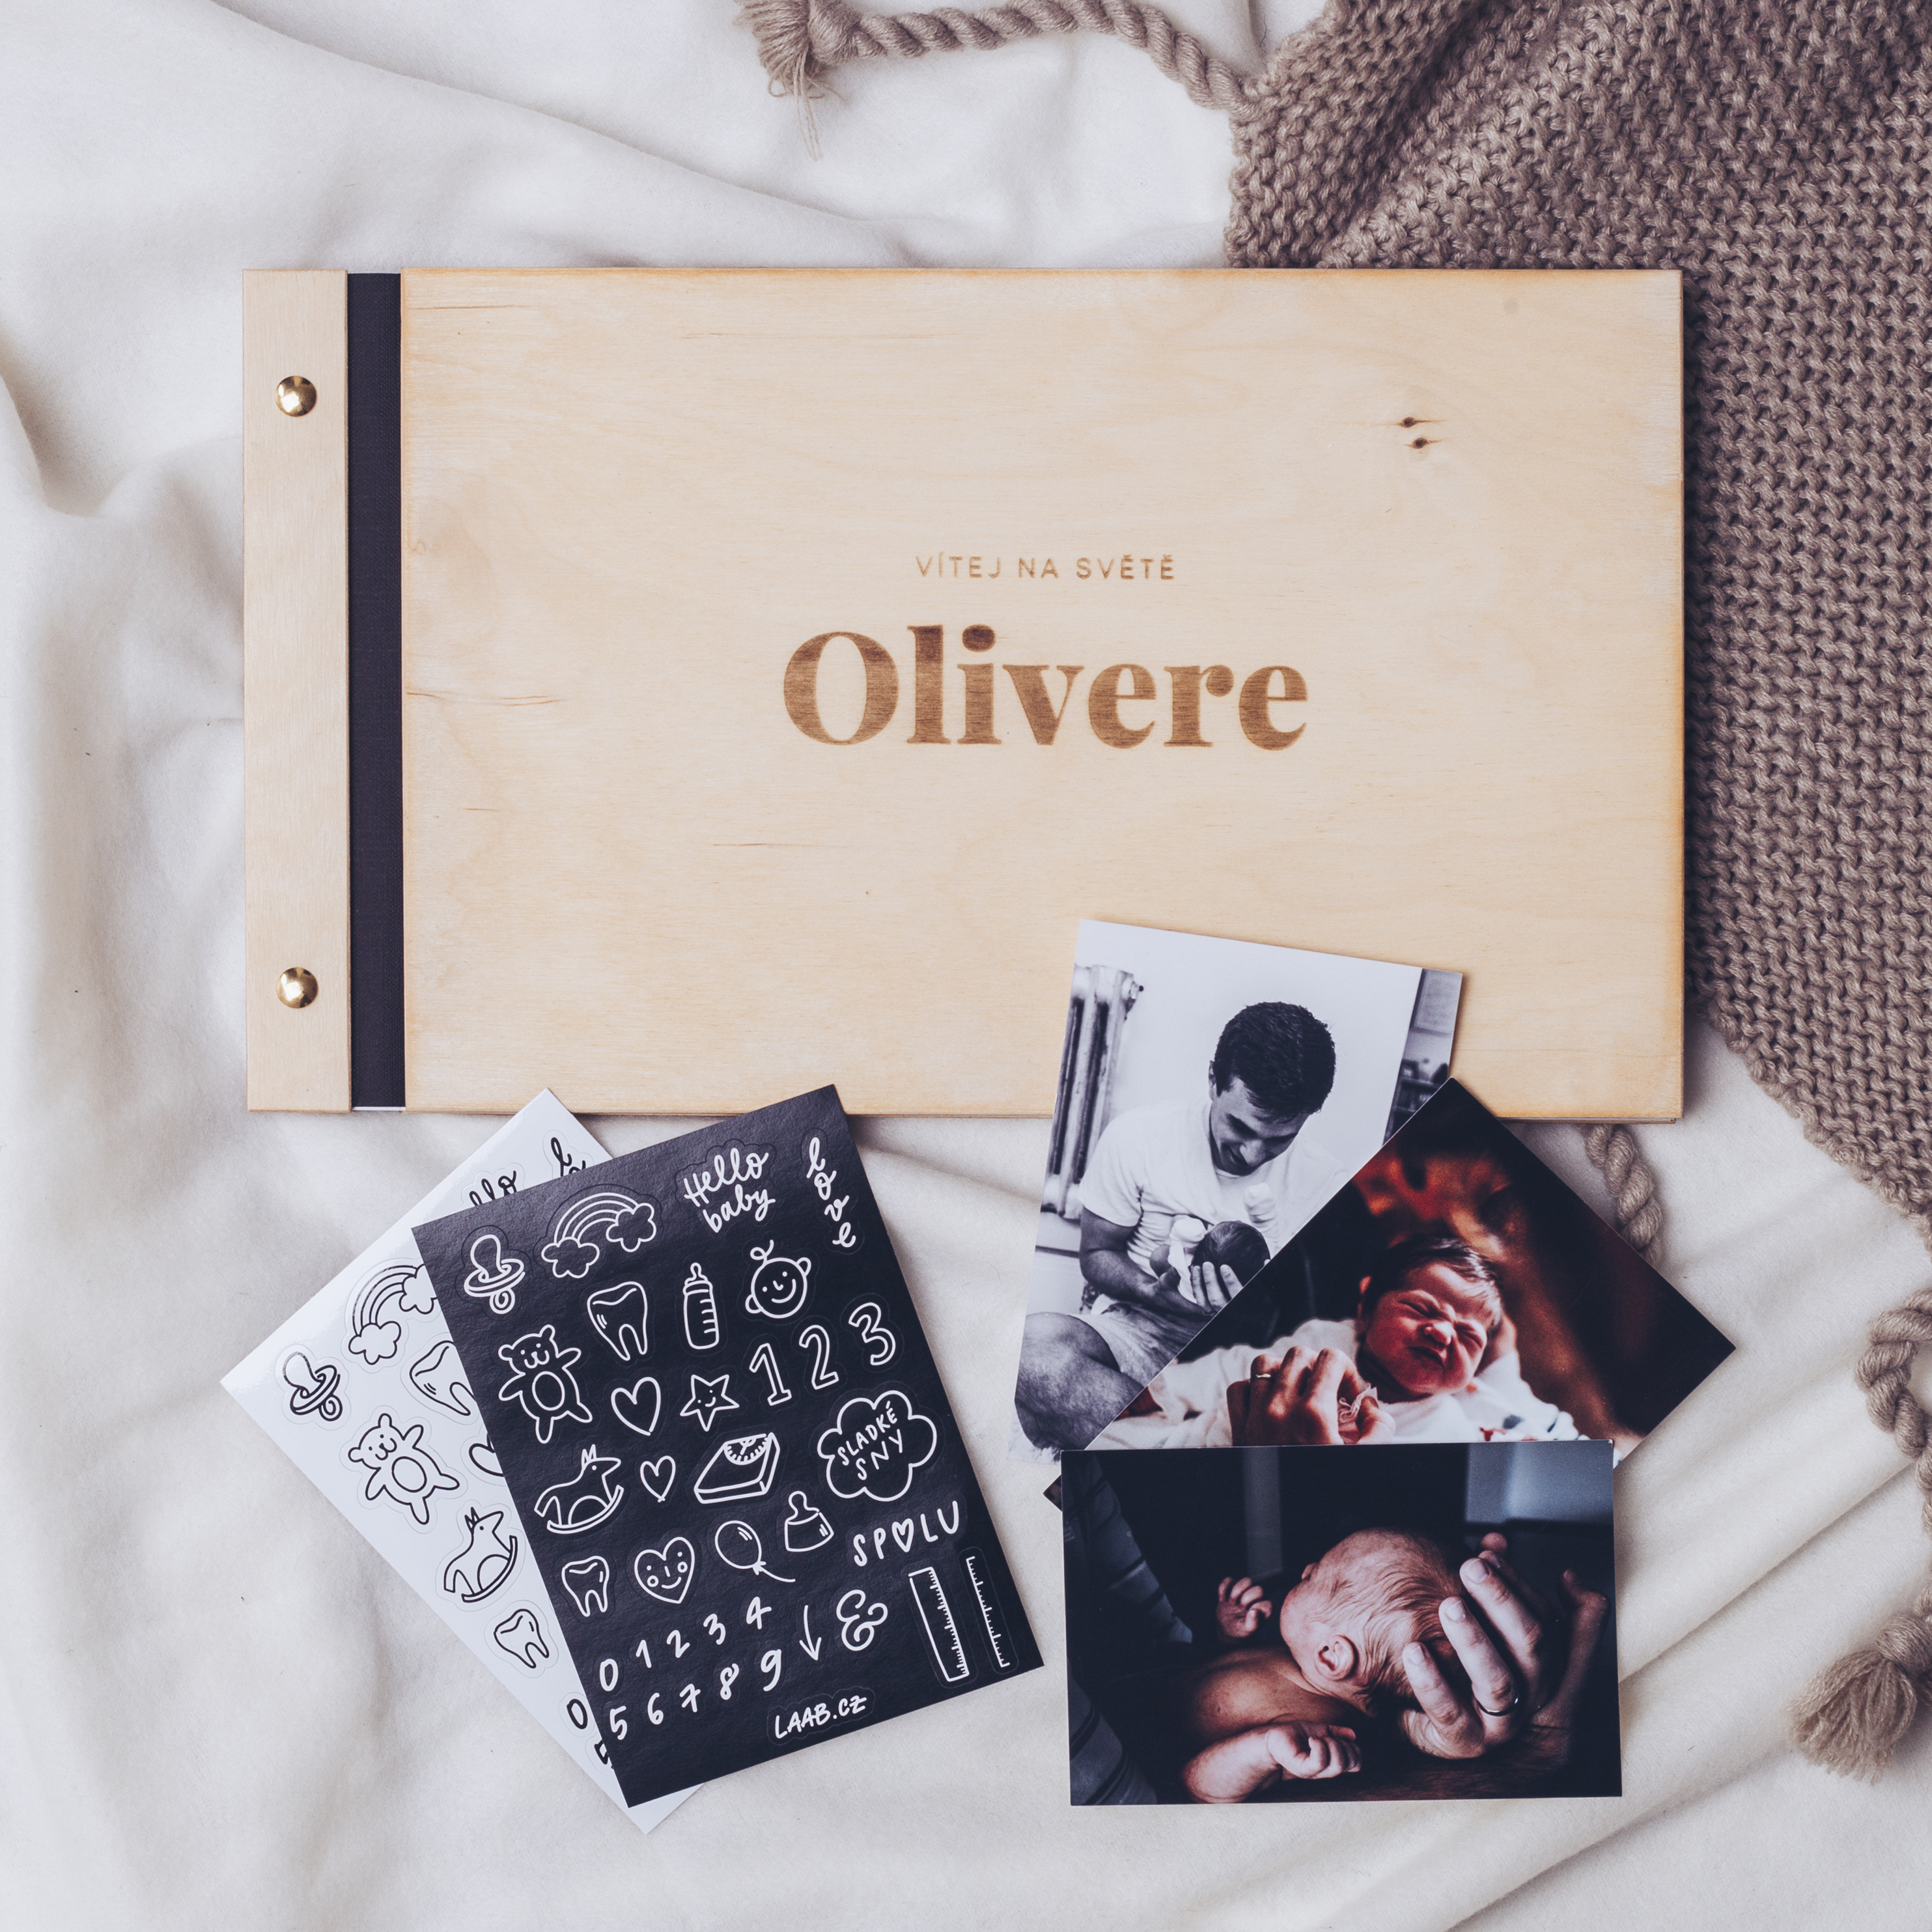 dřevěné fotoalbum Oliver: FORMÁT FOTOALBA na šířku, POČET LISTŮ 45, FORMÁT FOTOALBA na výšku, POČET LISTŮ 20, BARVA LISTŮ bílá